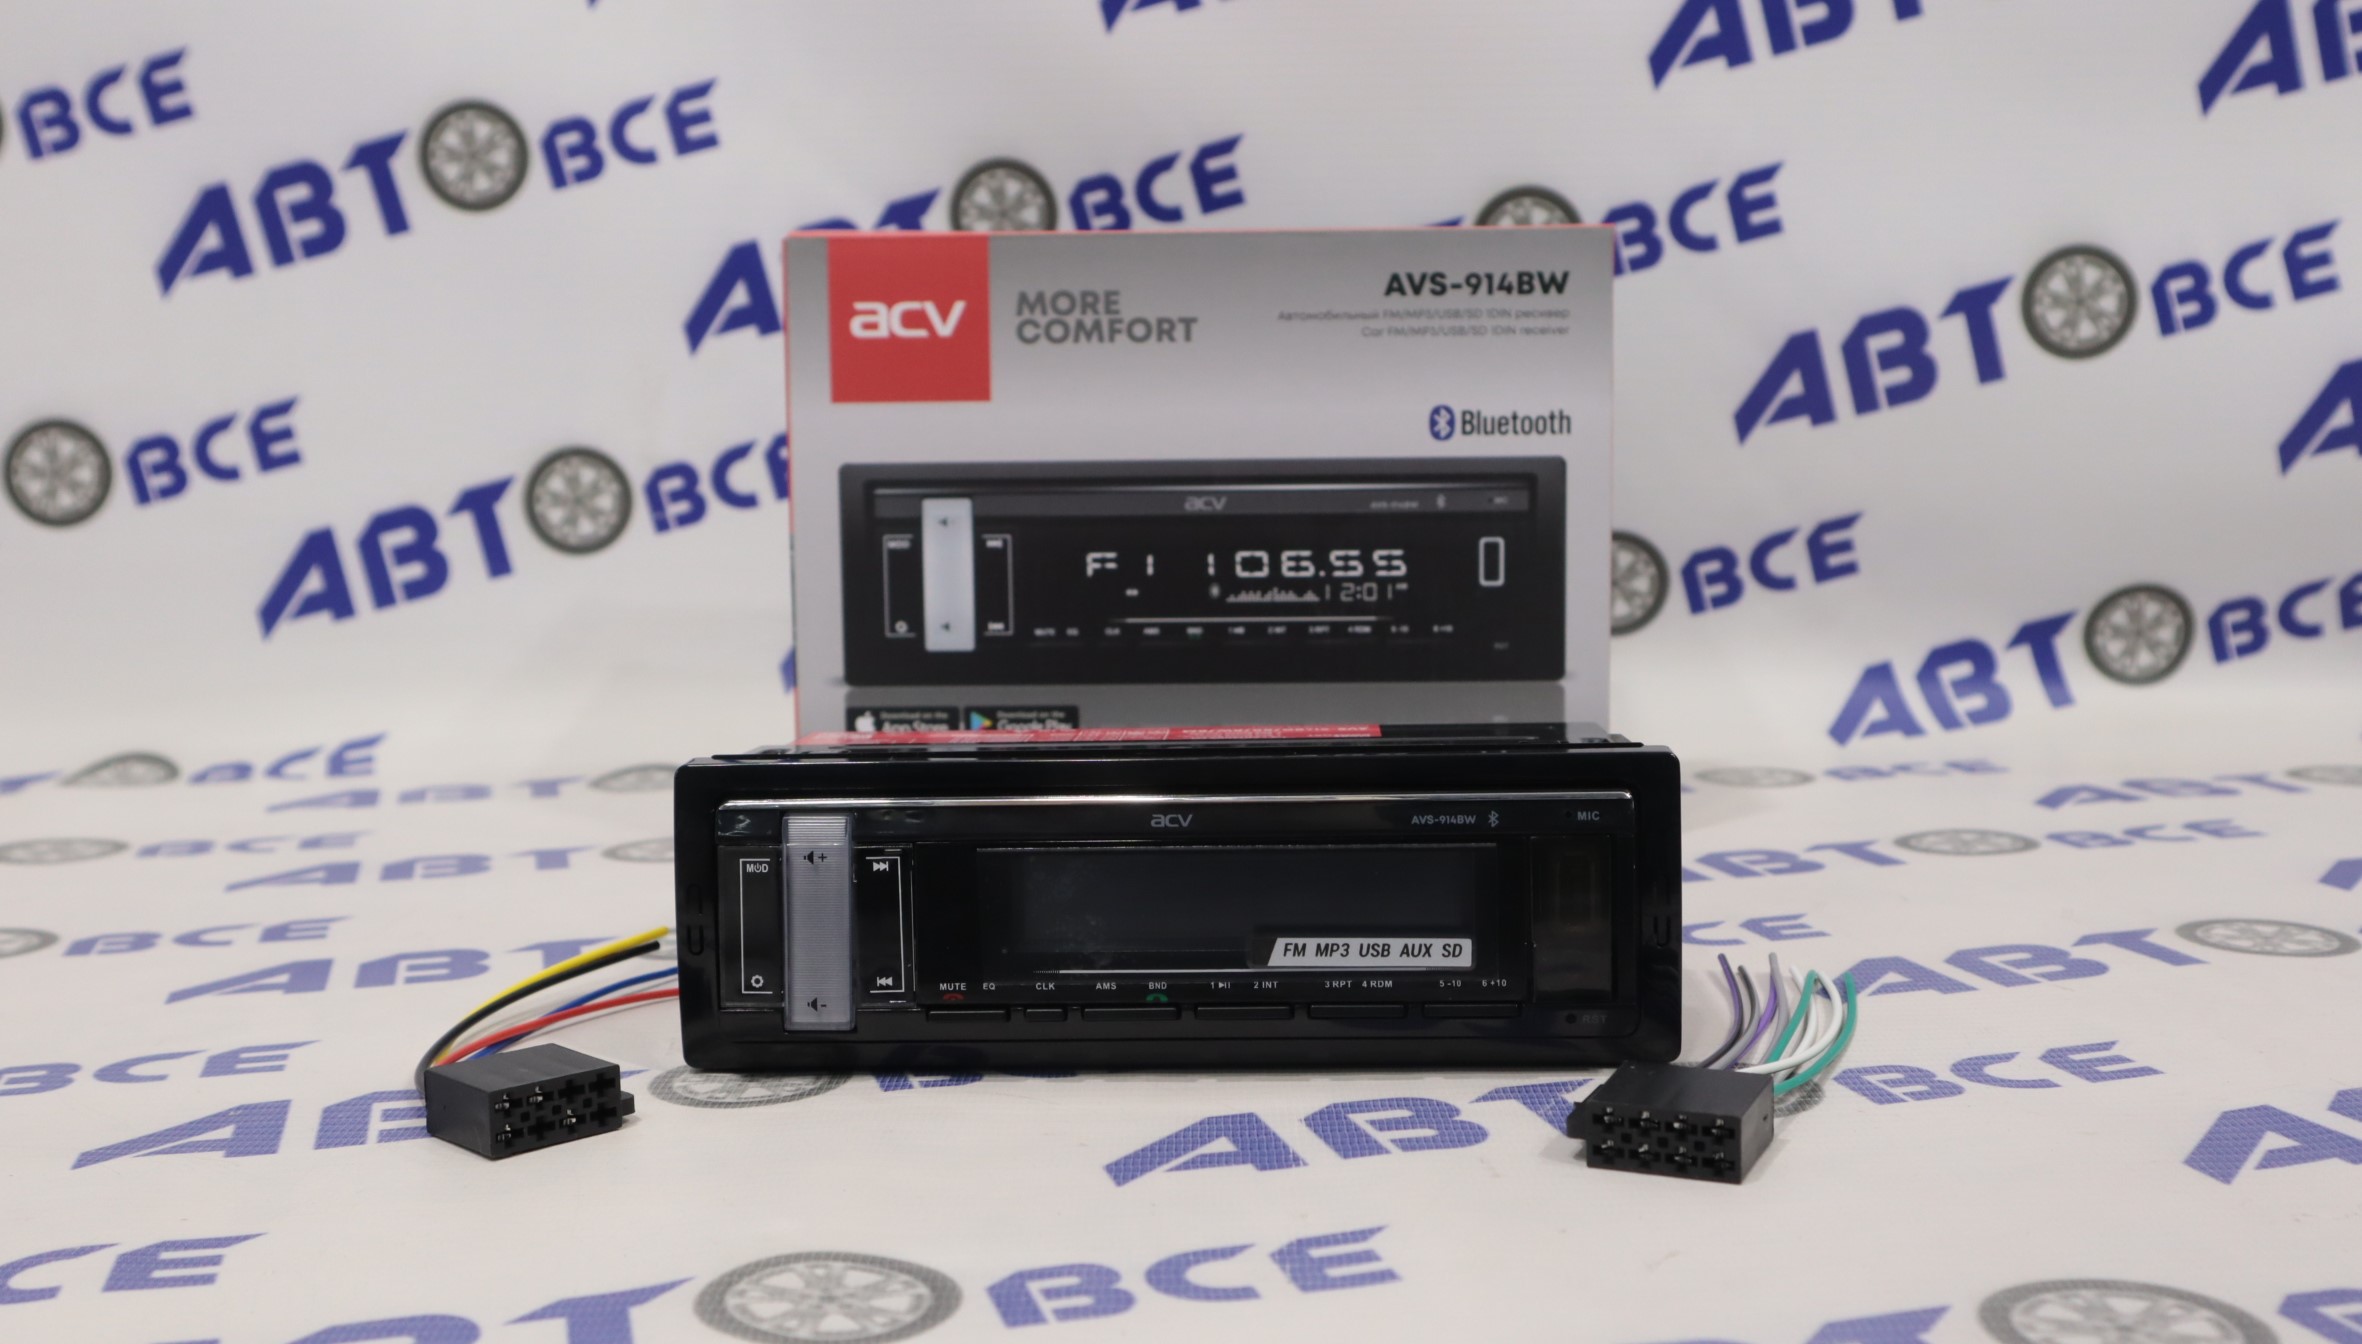 Автомагнитола (магнитофон) 1din белая (USB/BT/SD/FM/AUX) AVS-914BW ACV